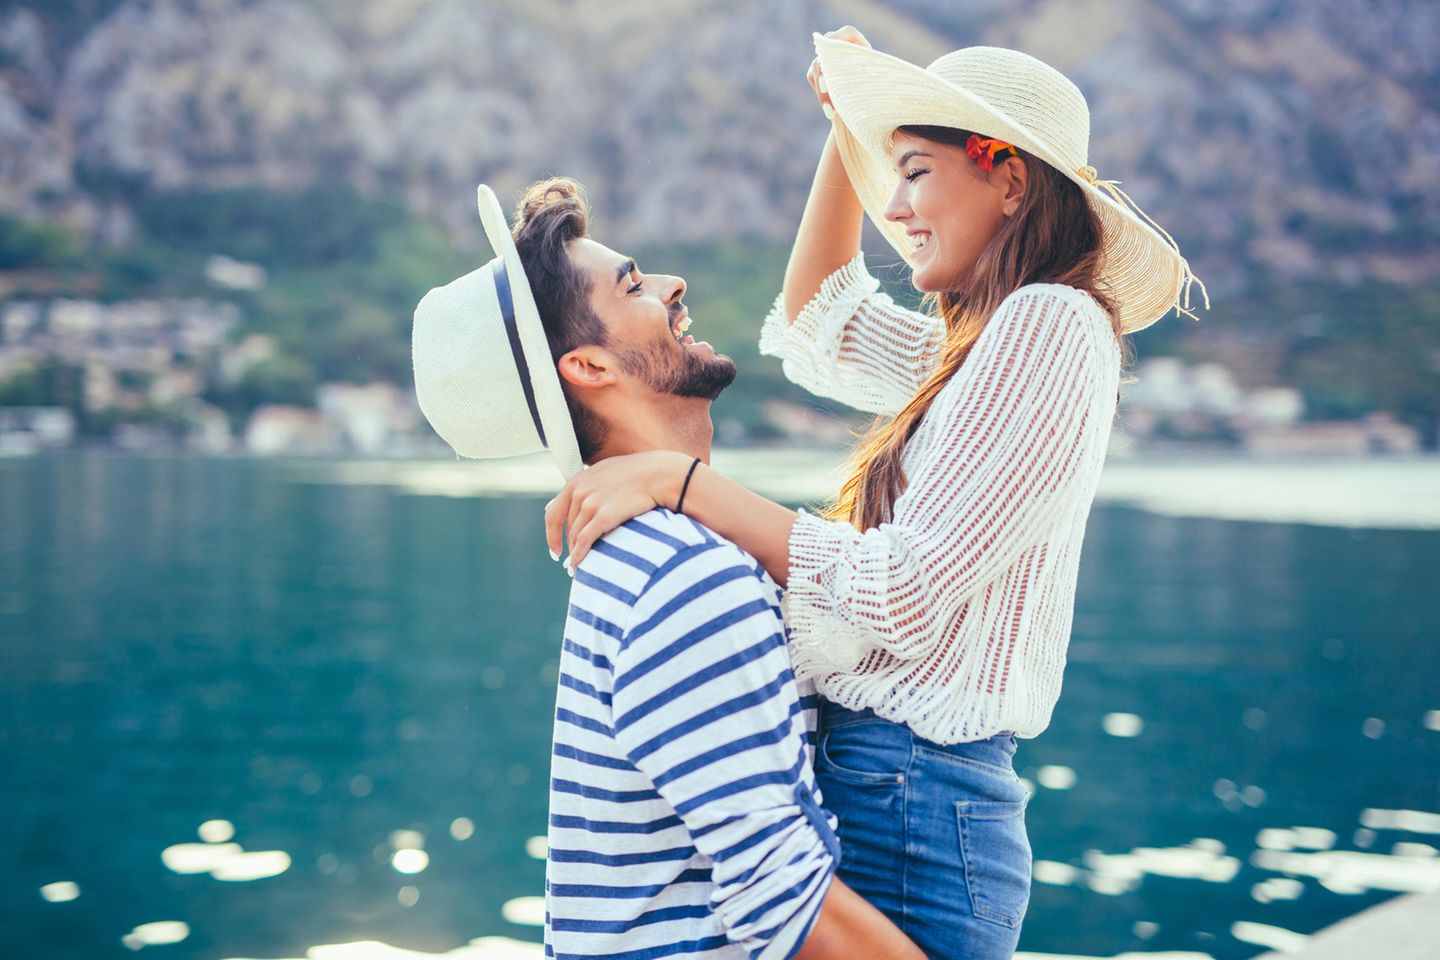 Psychologe: "In der Liebe ist Egoismus Pflicht" - Ein verliebtes Paar am Meer